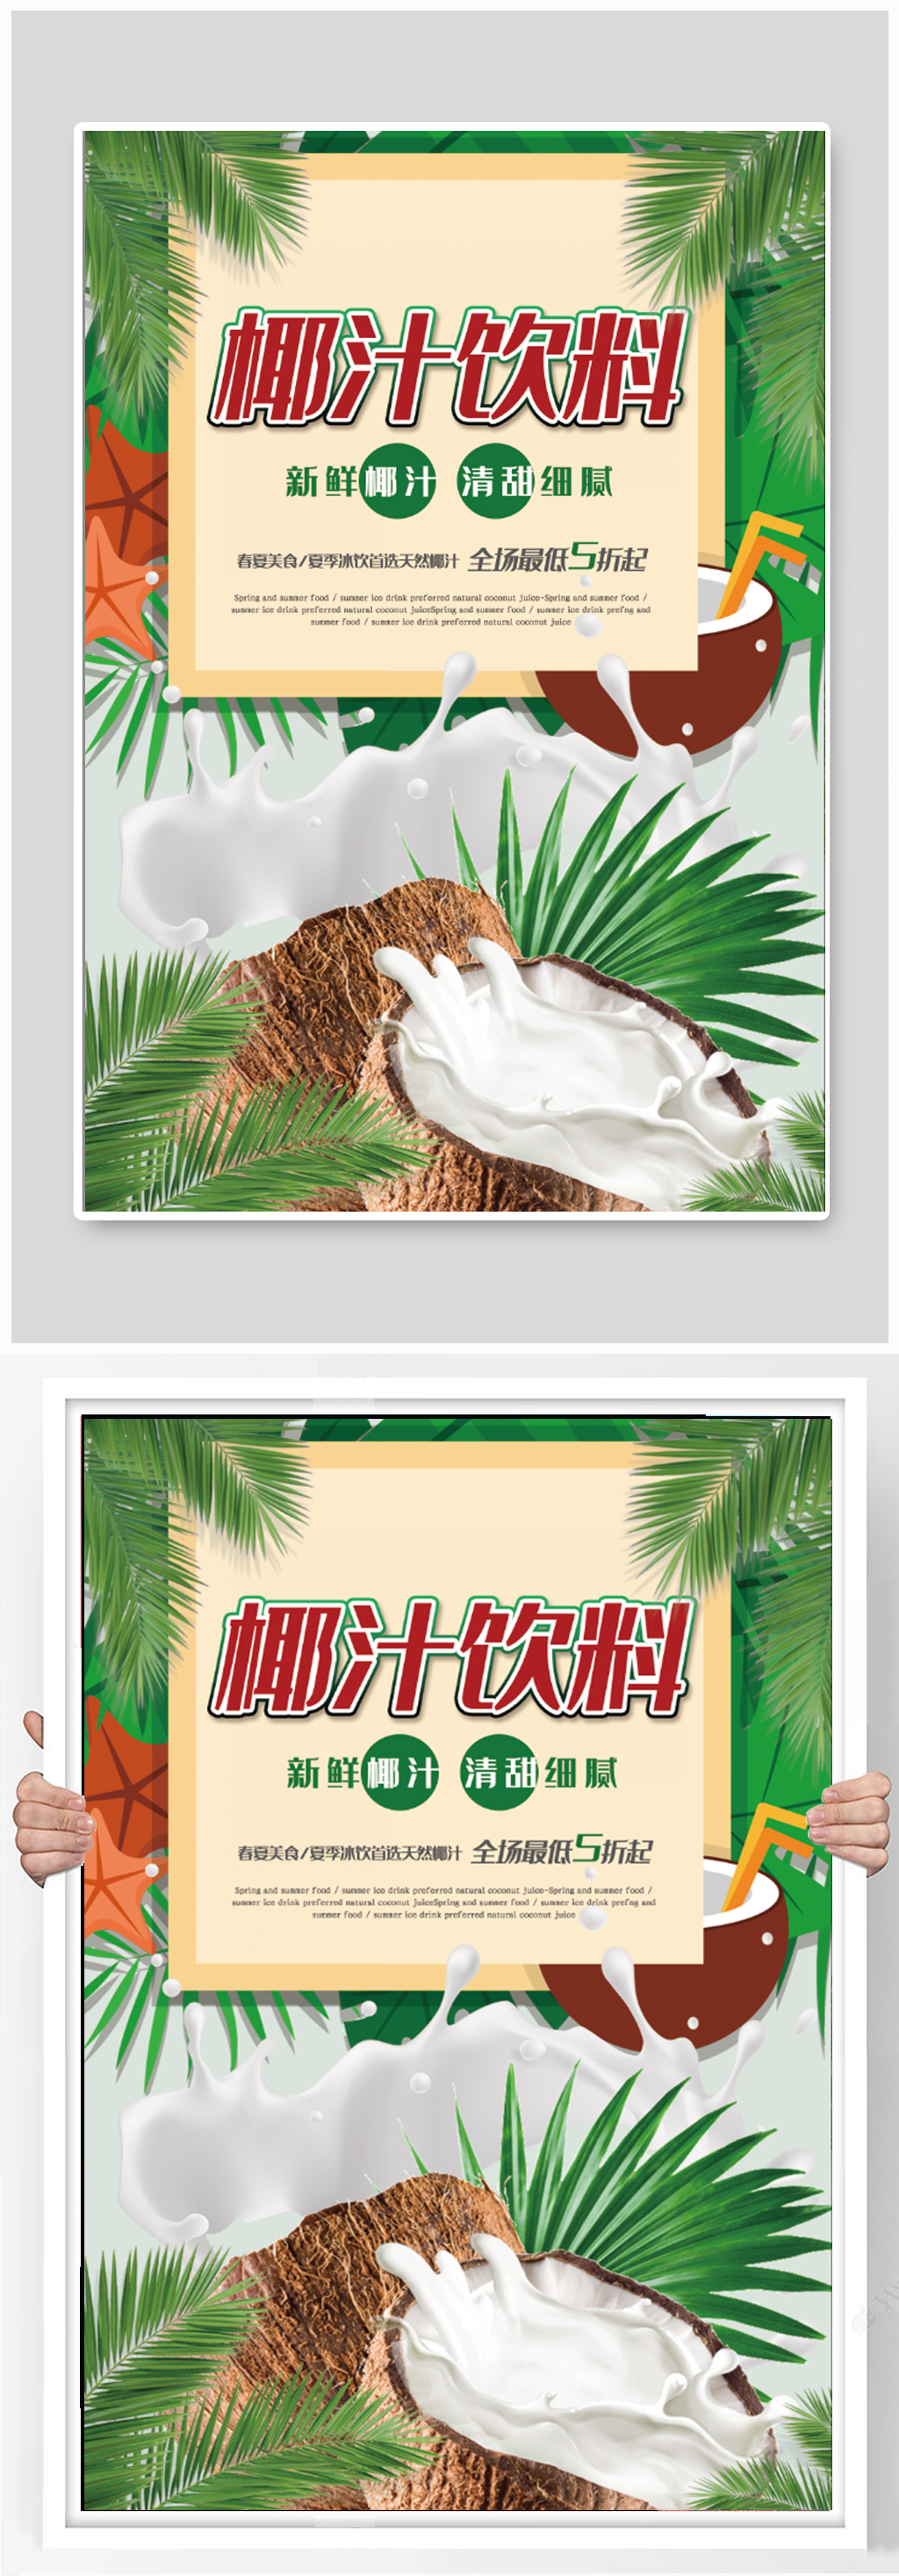 椰汁广告图片无字图片